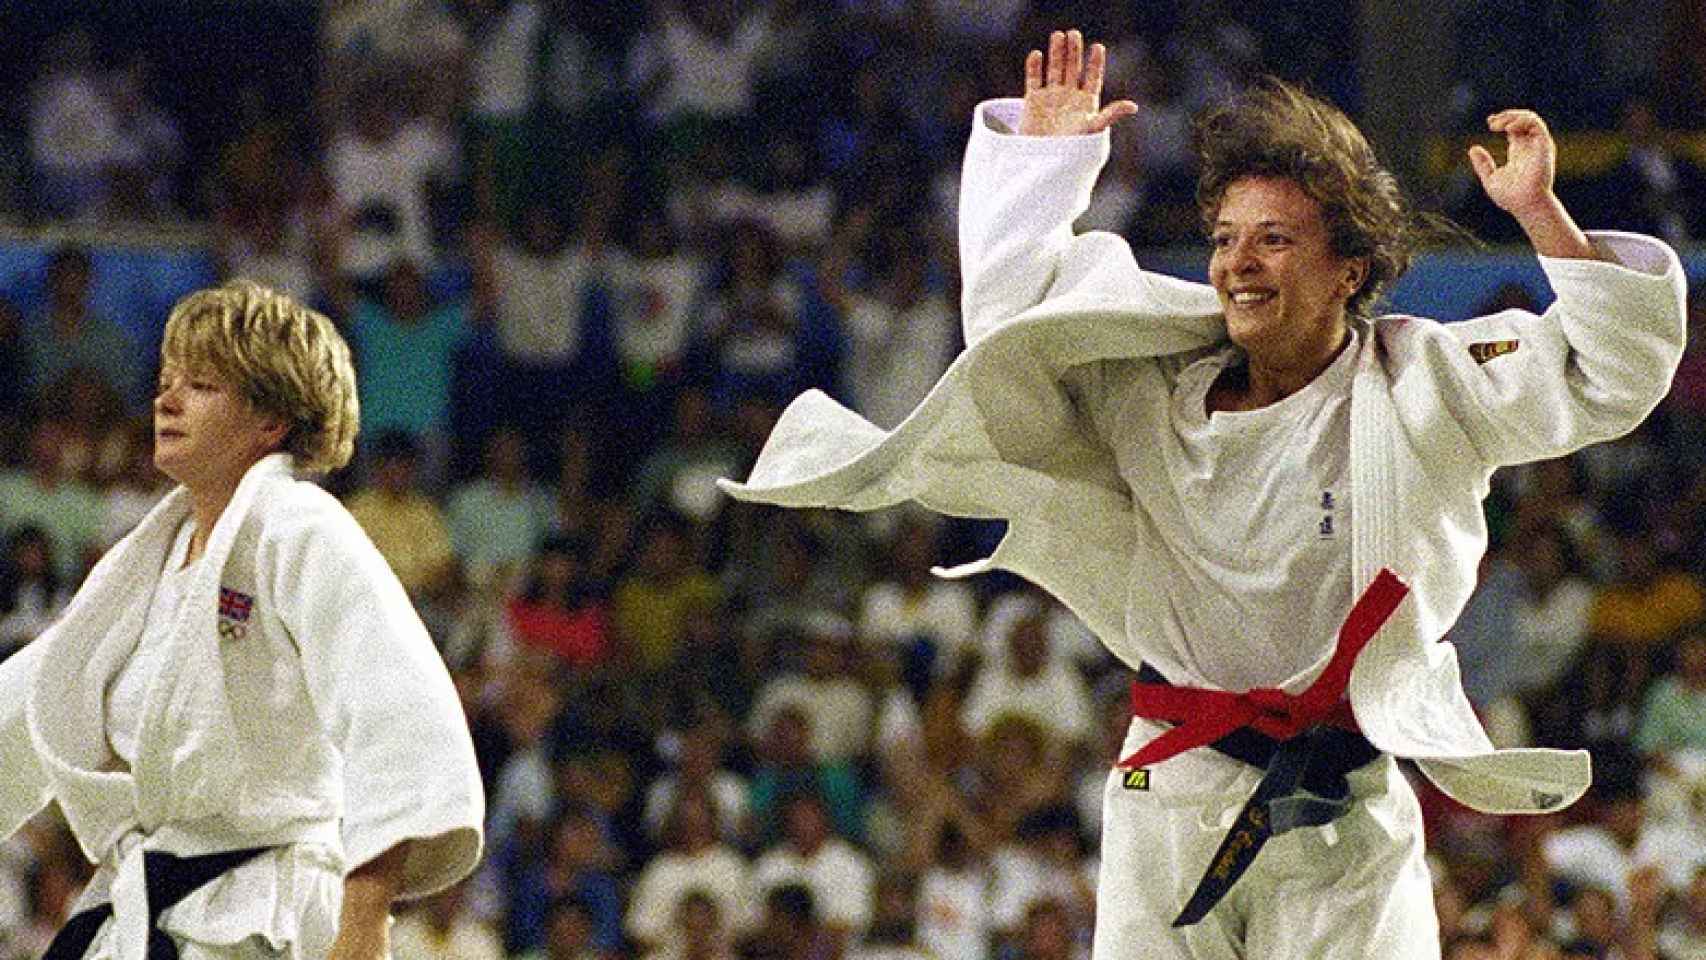 Miriam Blasco gana el oro en Barcelona 92 tras derrotar a Nicola Fairbrother